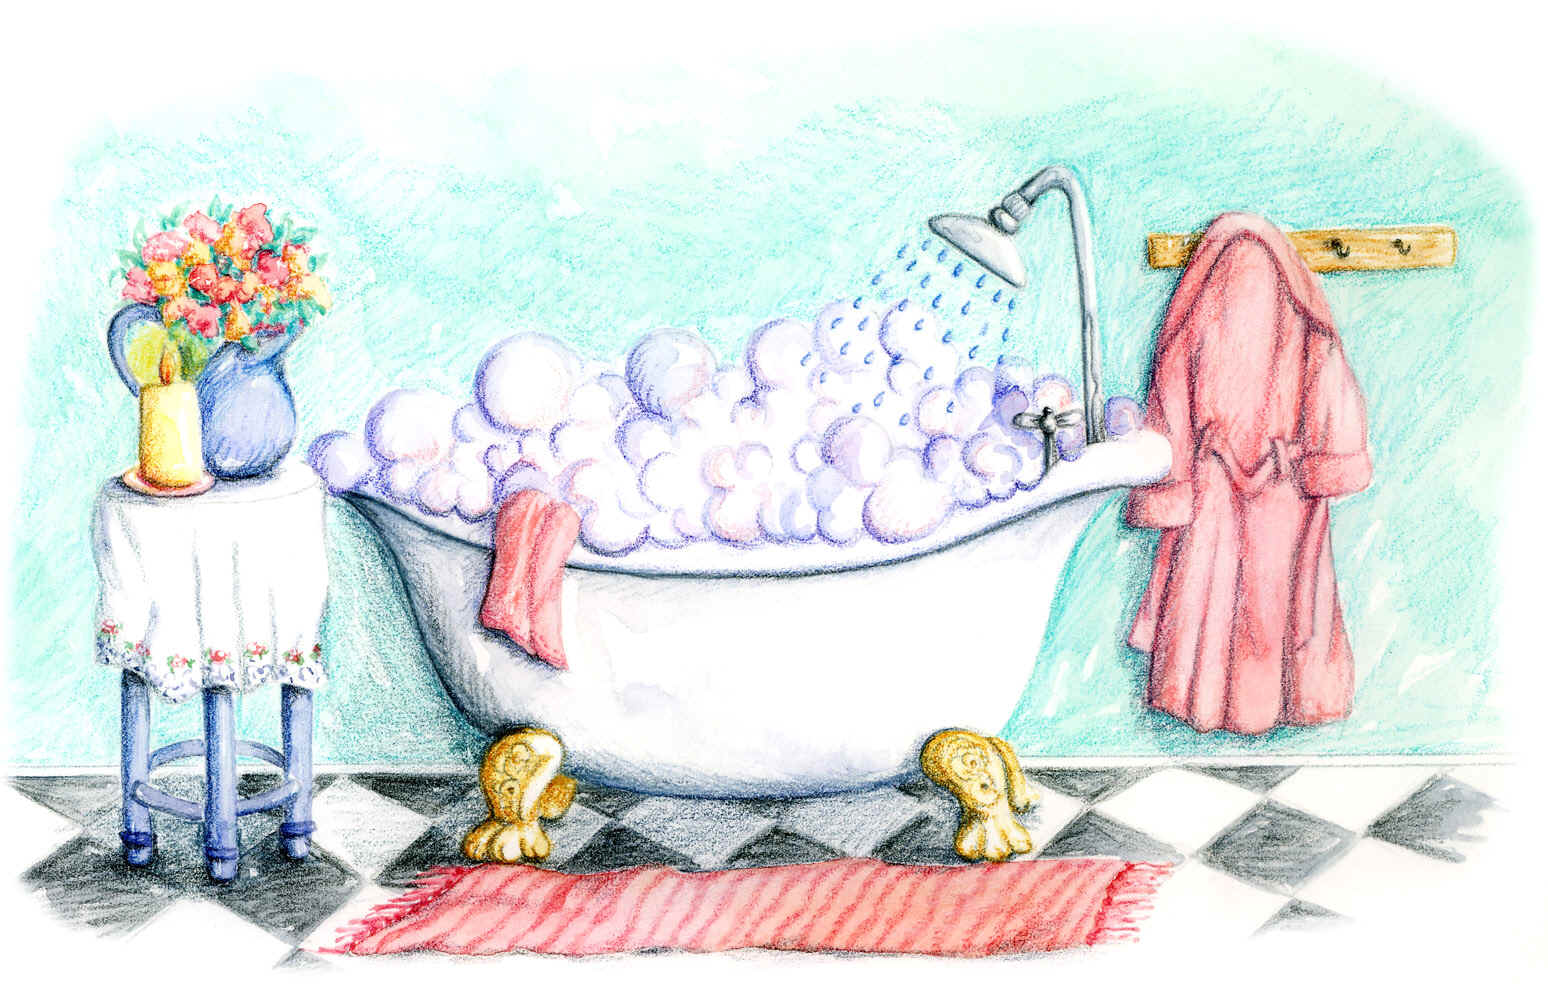 Clip Arts Related To : clipart bubble bath. view all Bubble Bath Clip...